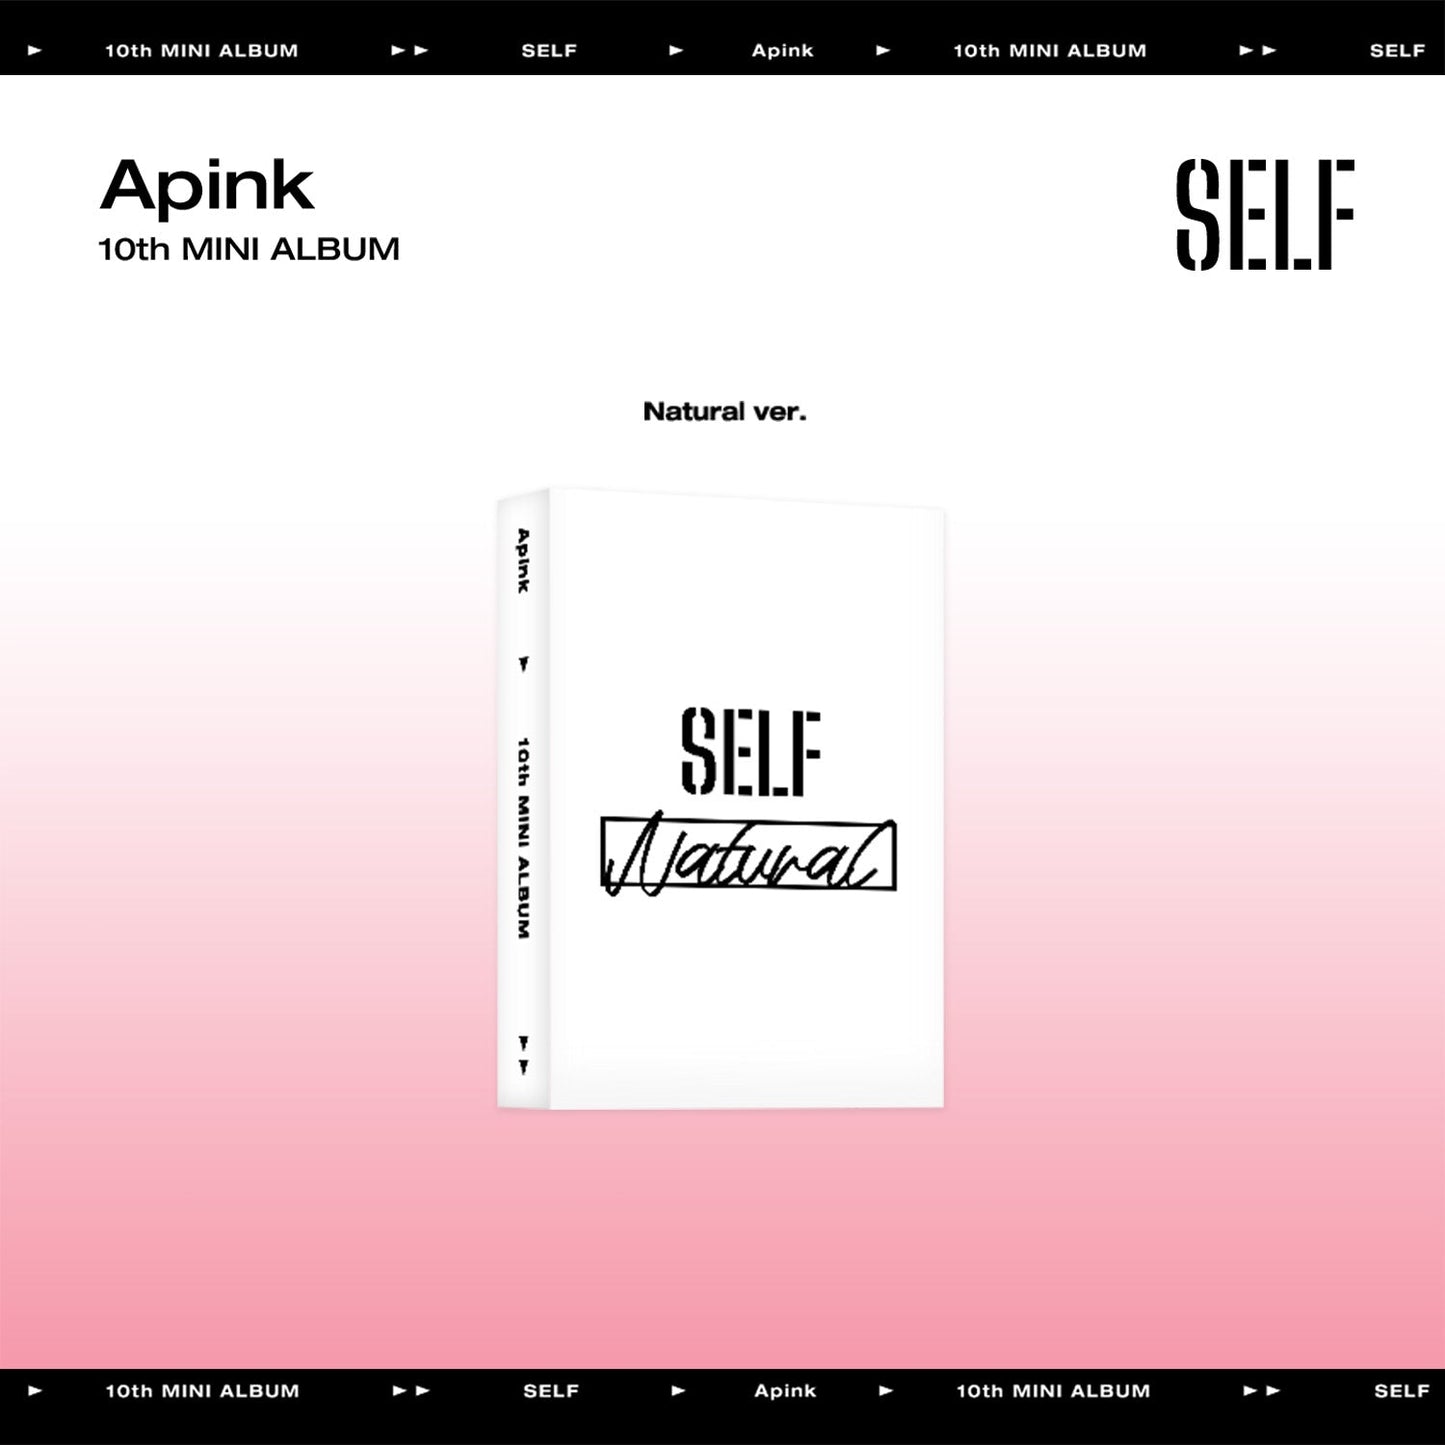 APINK 10TH MINI ALBUM 'SELF' (META) NATURAL VERSION COVER